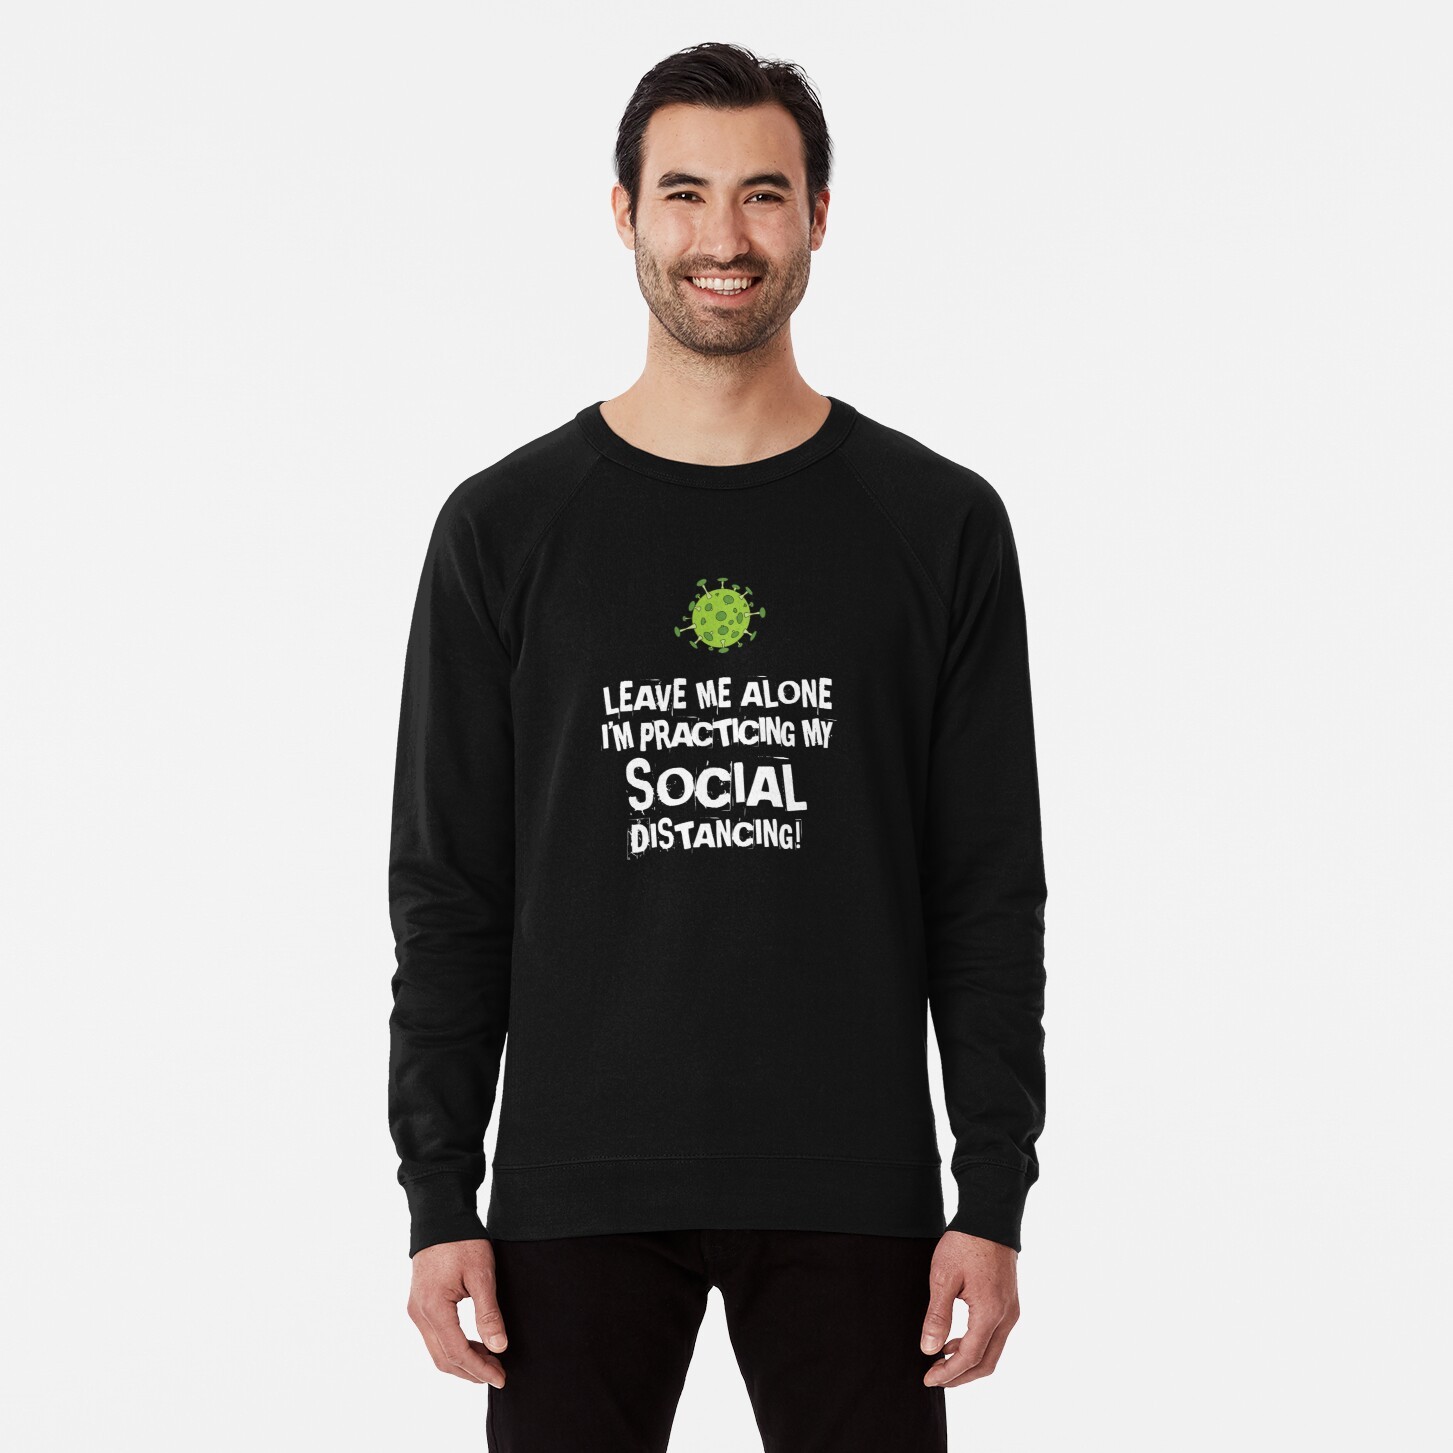 Practicing Social Distancing Lightweight Sweatshirt - 